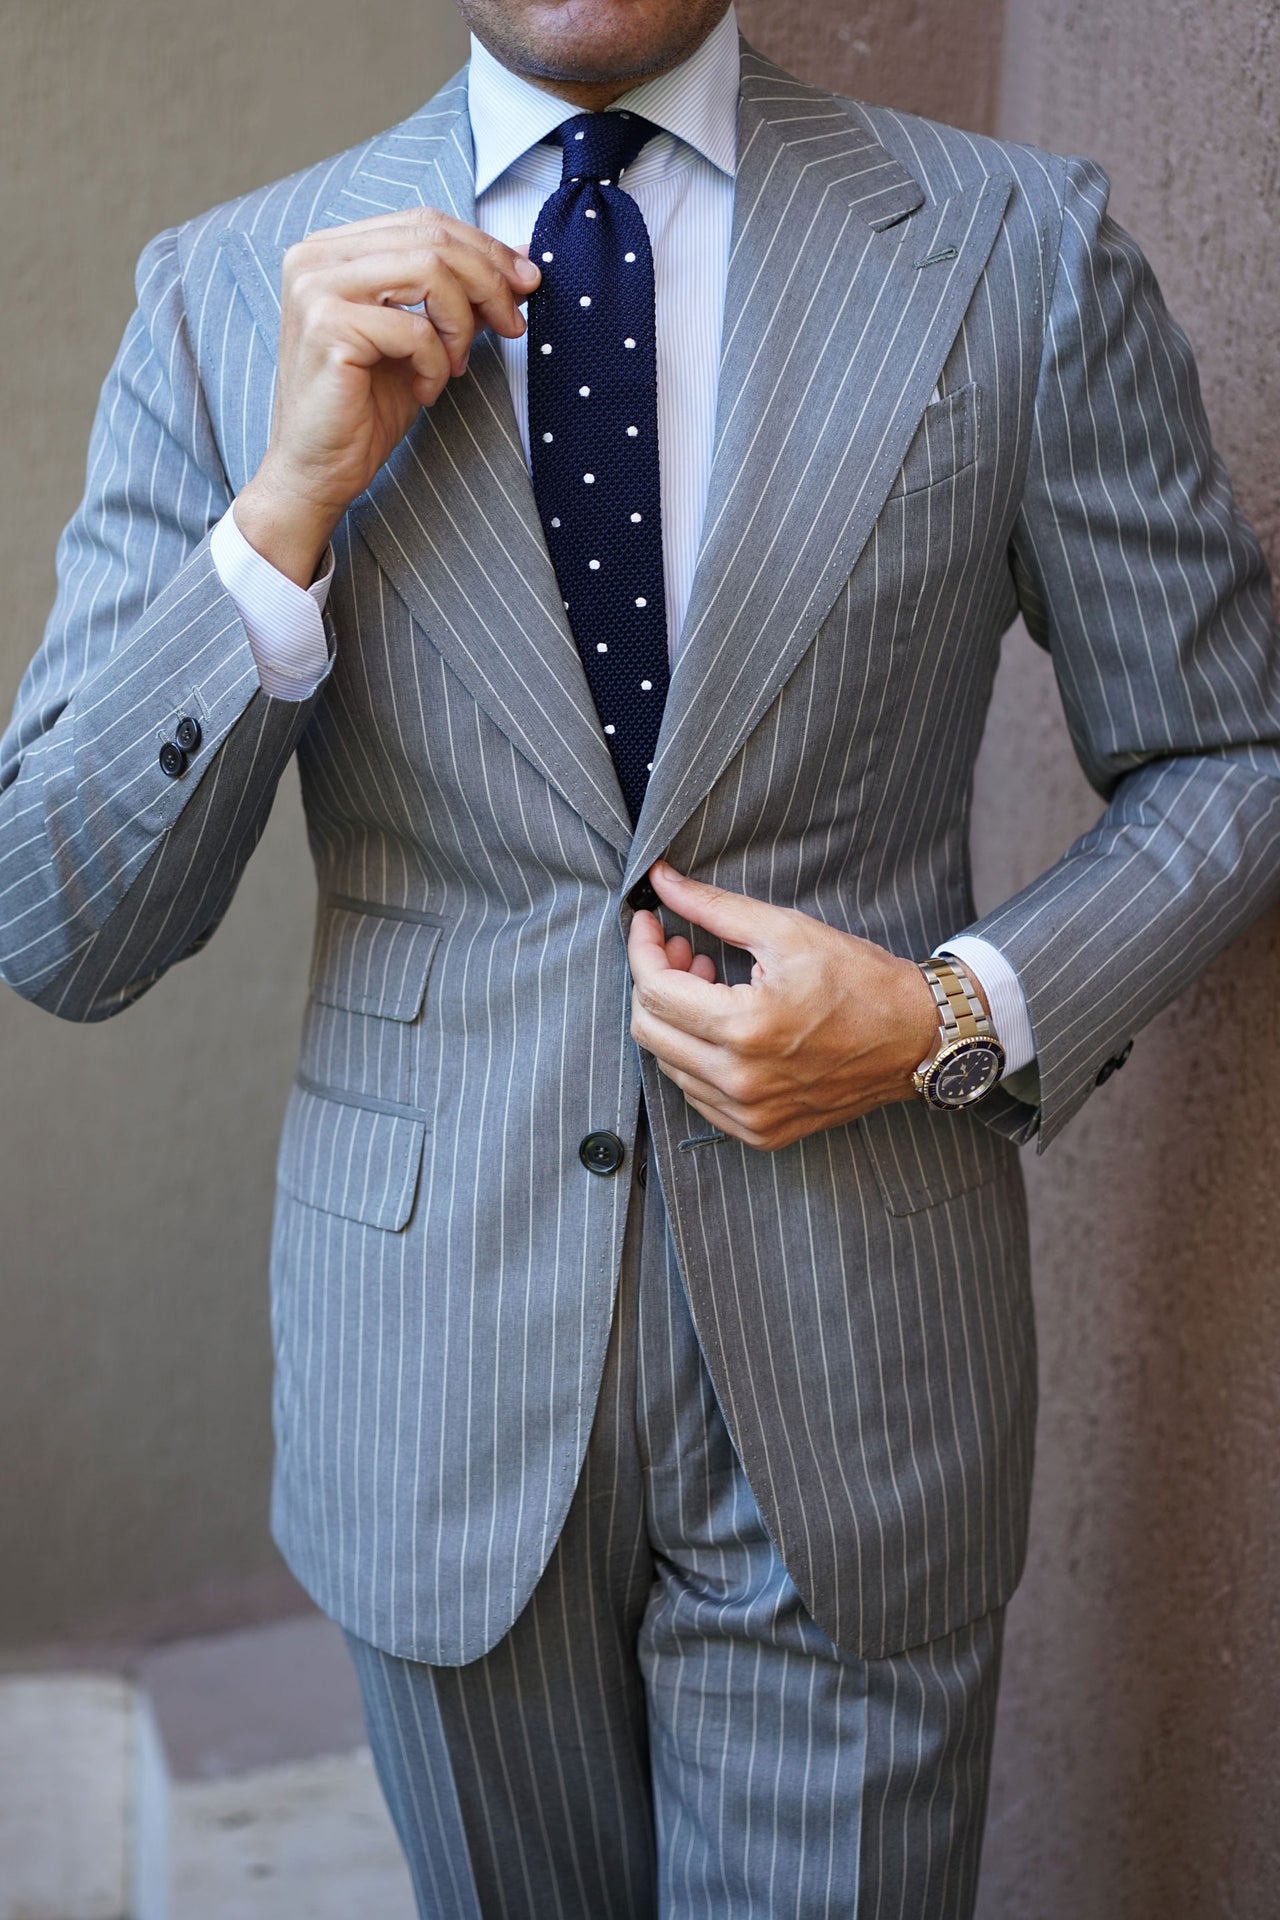 Lookbook Suits in Water Ties Neckties | OTAA